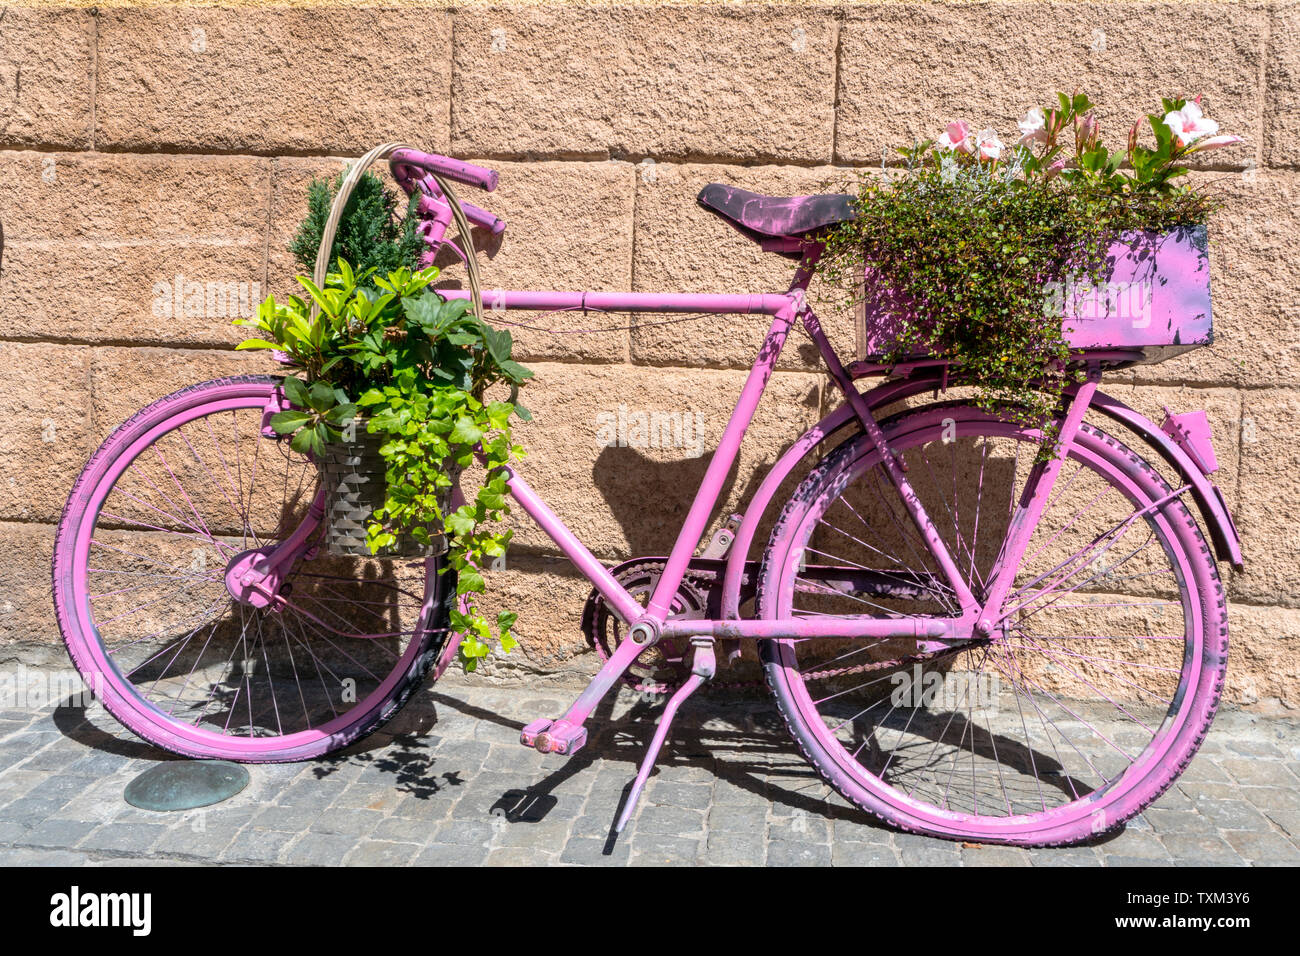 Eine horizontale Ansicht einer alten Fahrrad spray pink lackiert und mit Topfpflanzen und Efeu bedeckt Stockfoto